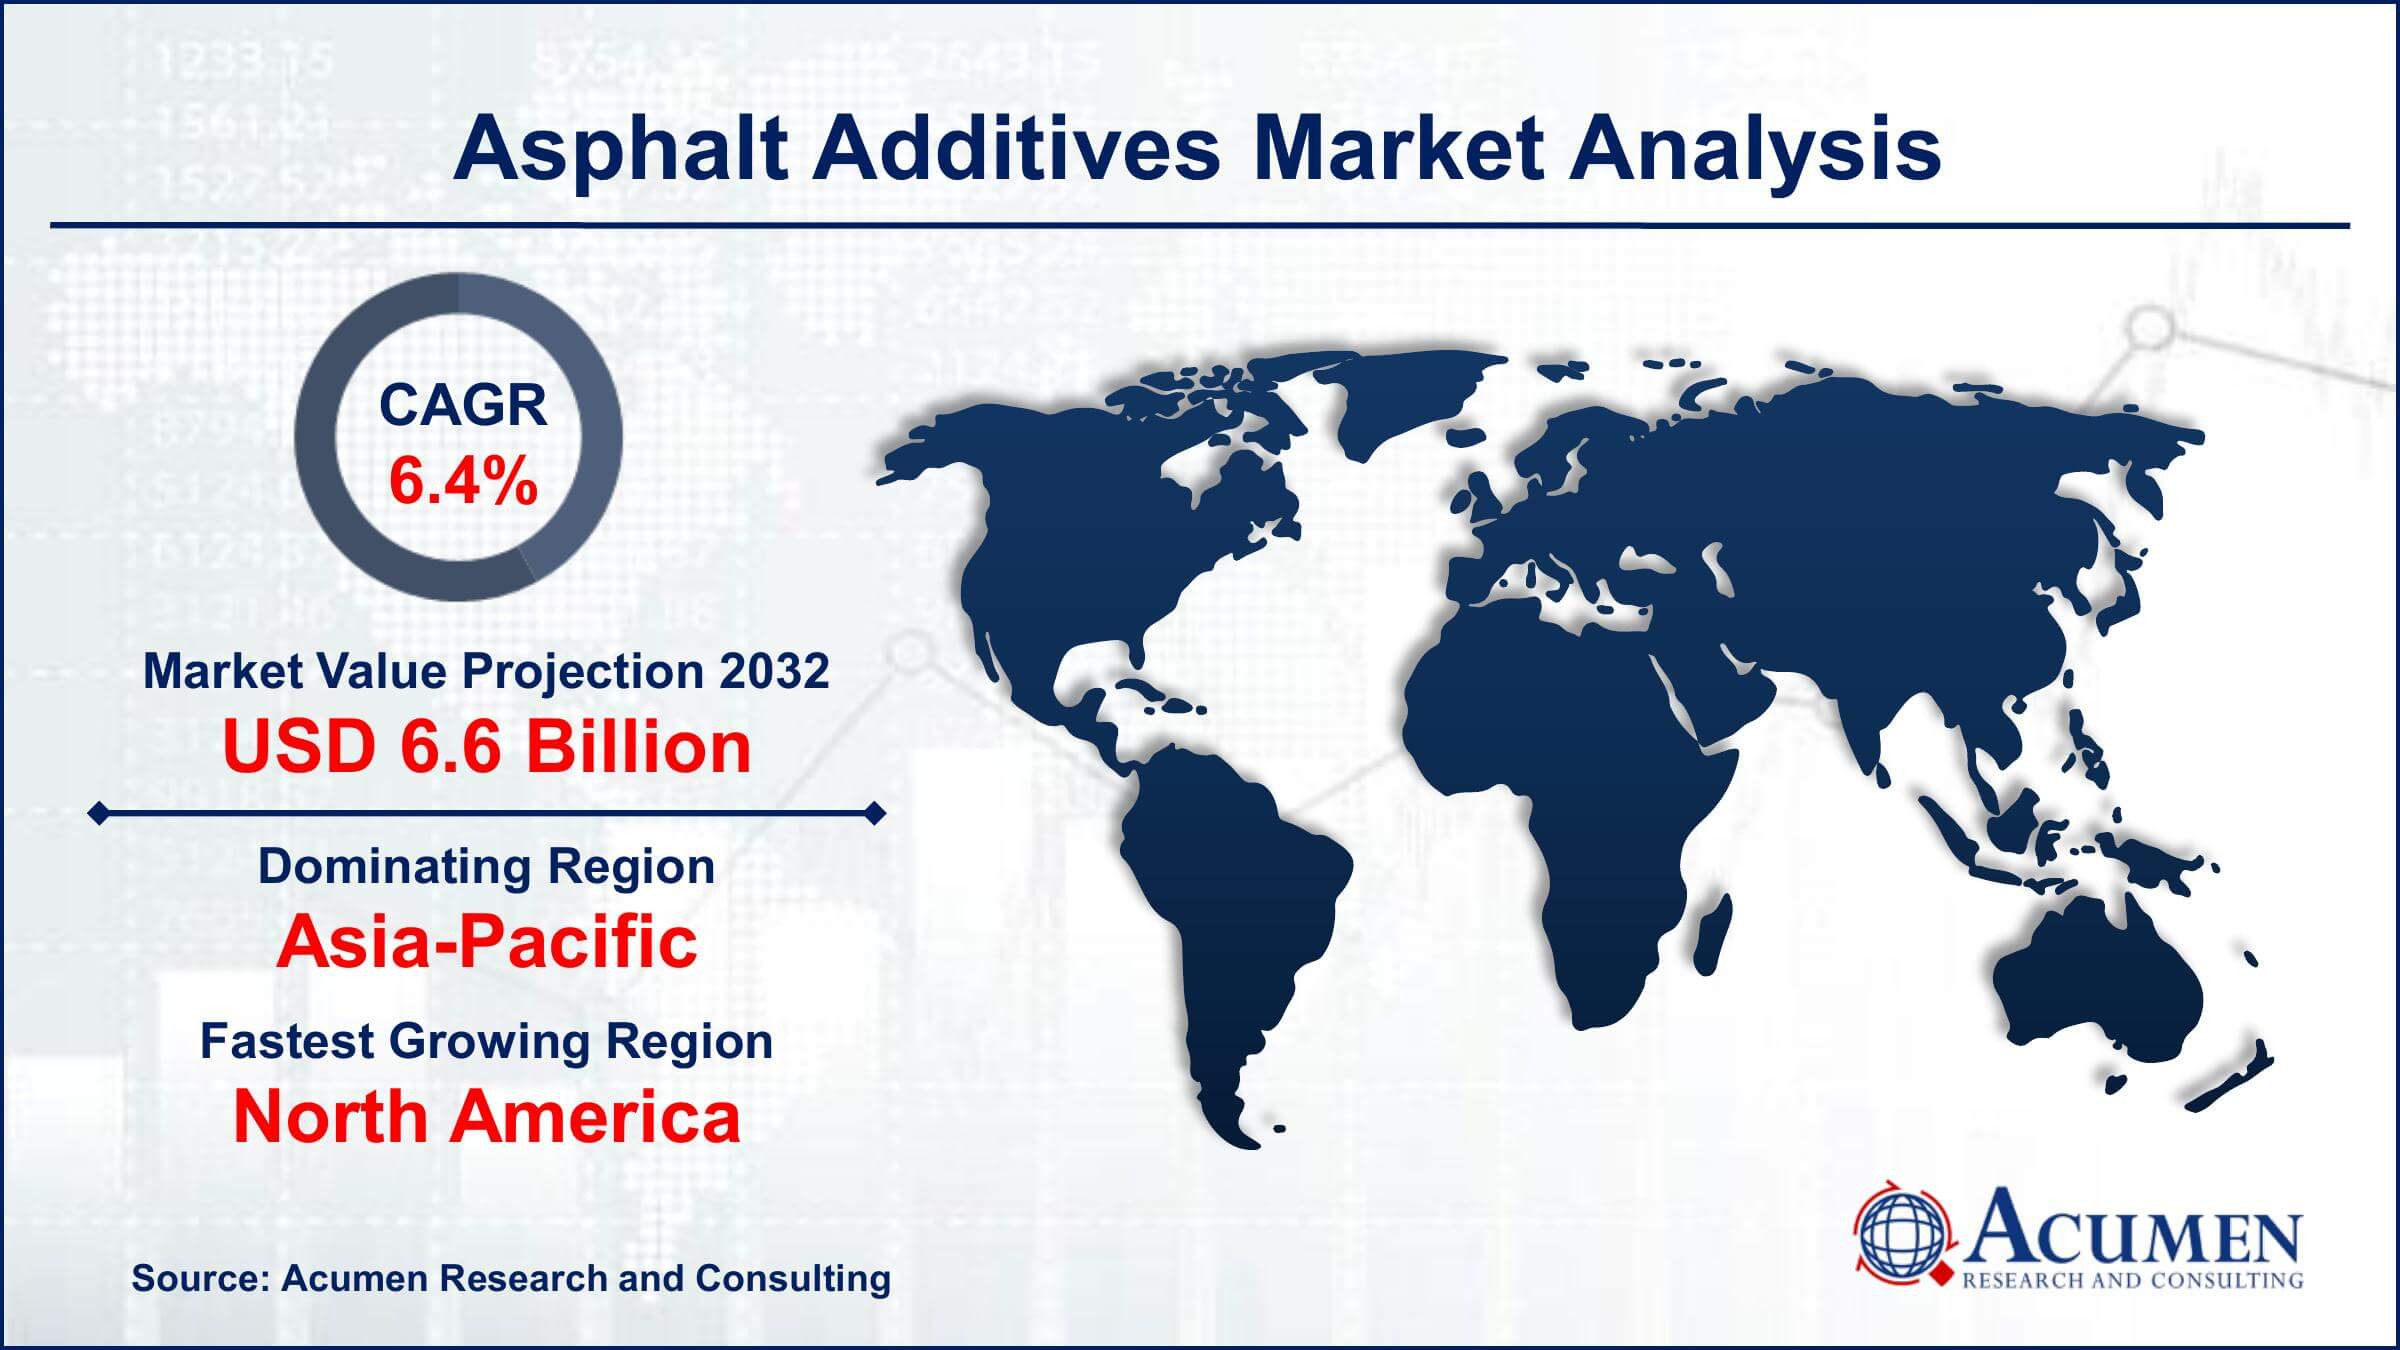 Global Asphalt Additives Market Trends